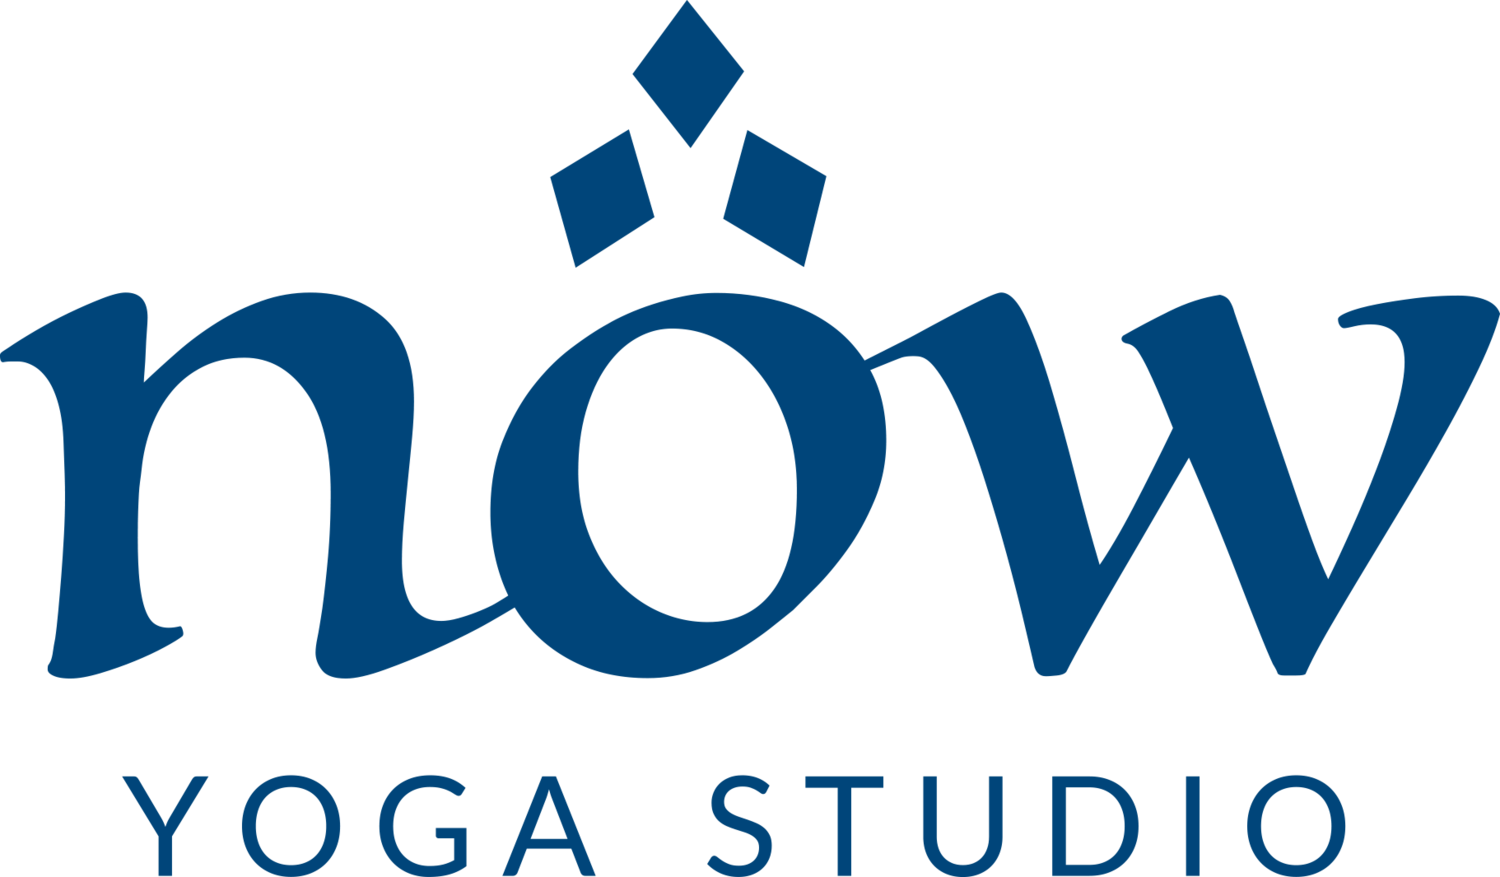 Now Yoga Studio